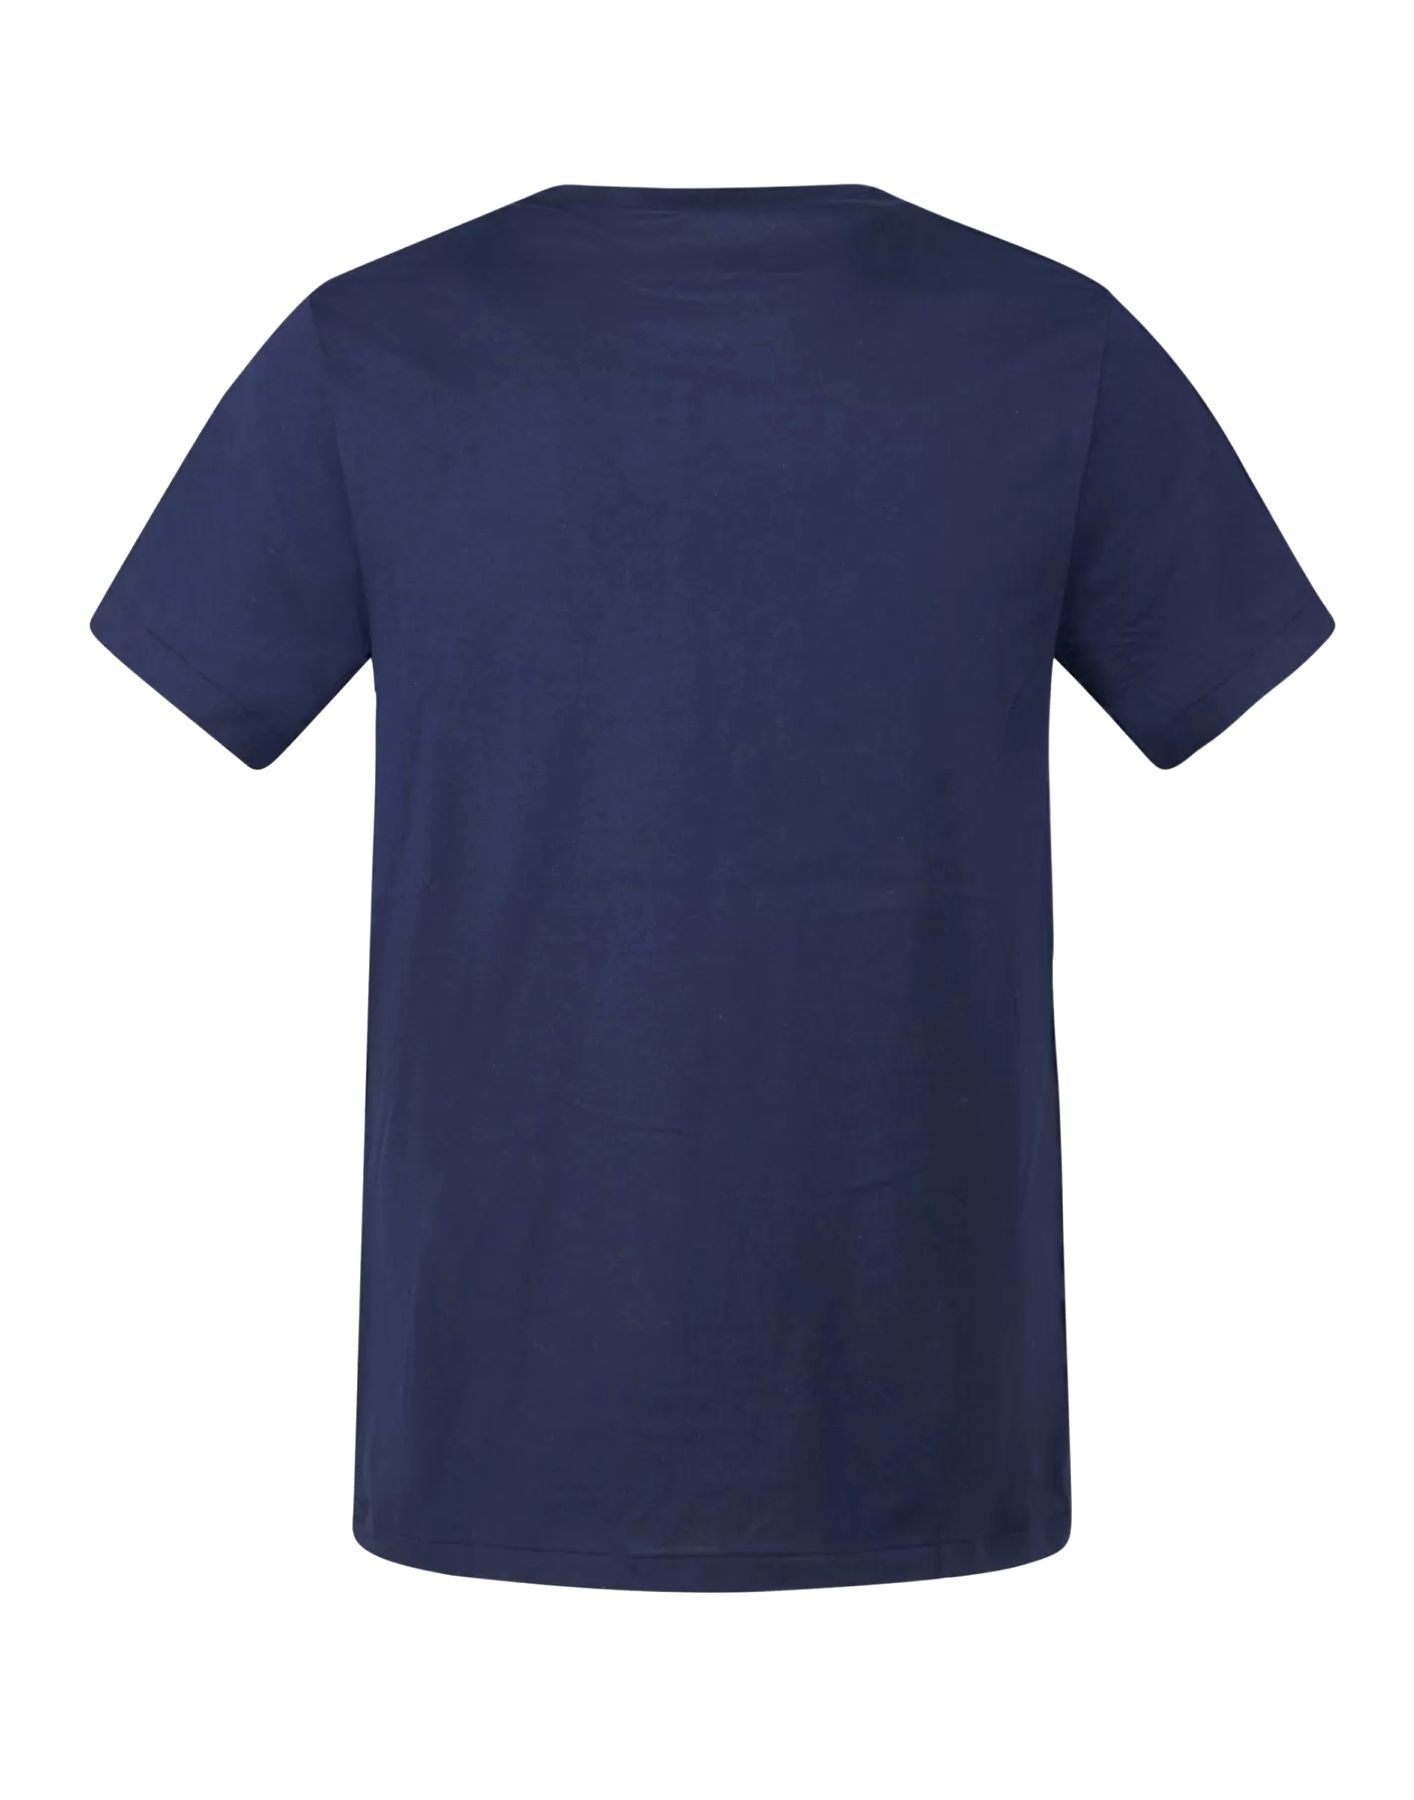 T-shirt homme 714844756002 MARINE Polo Ralph Lauren